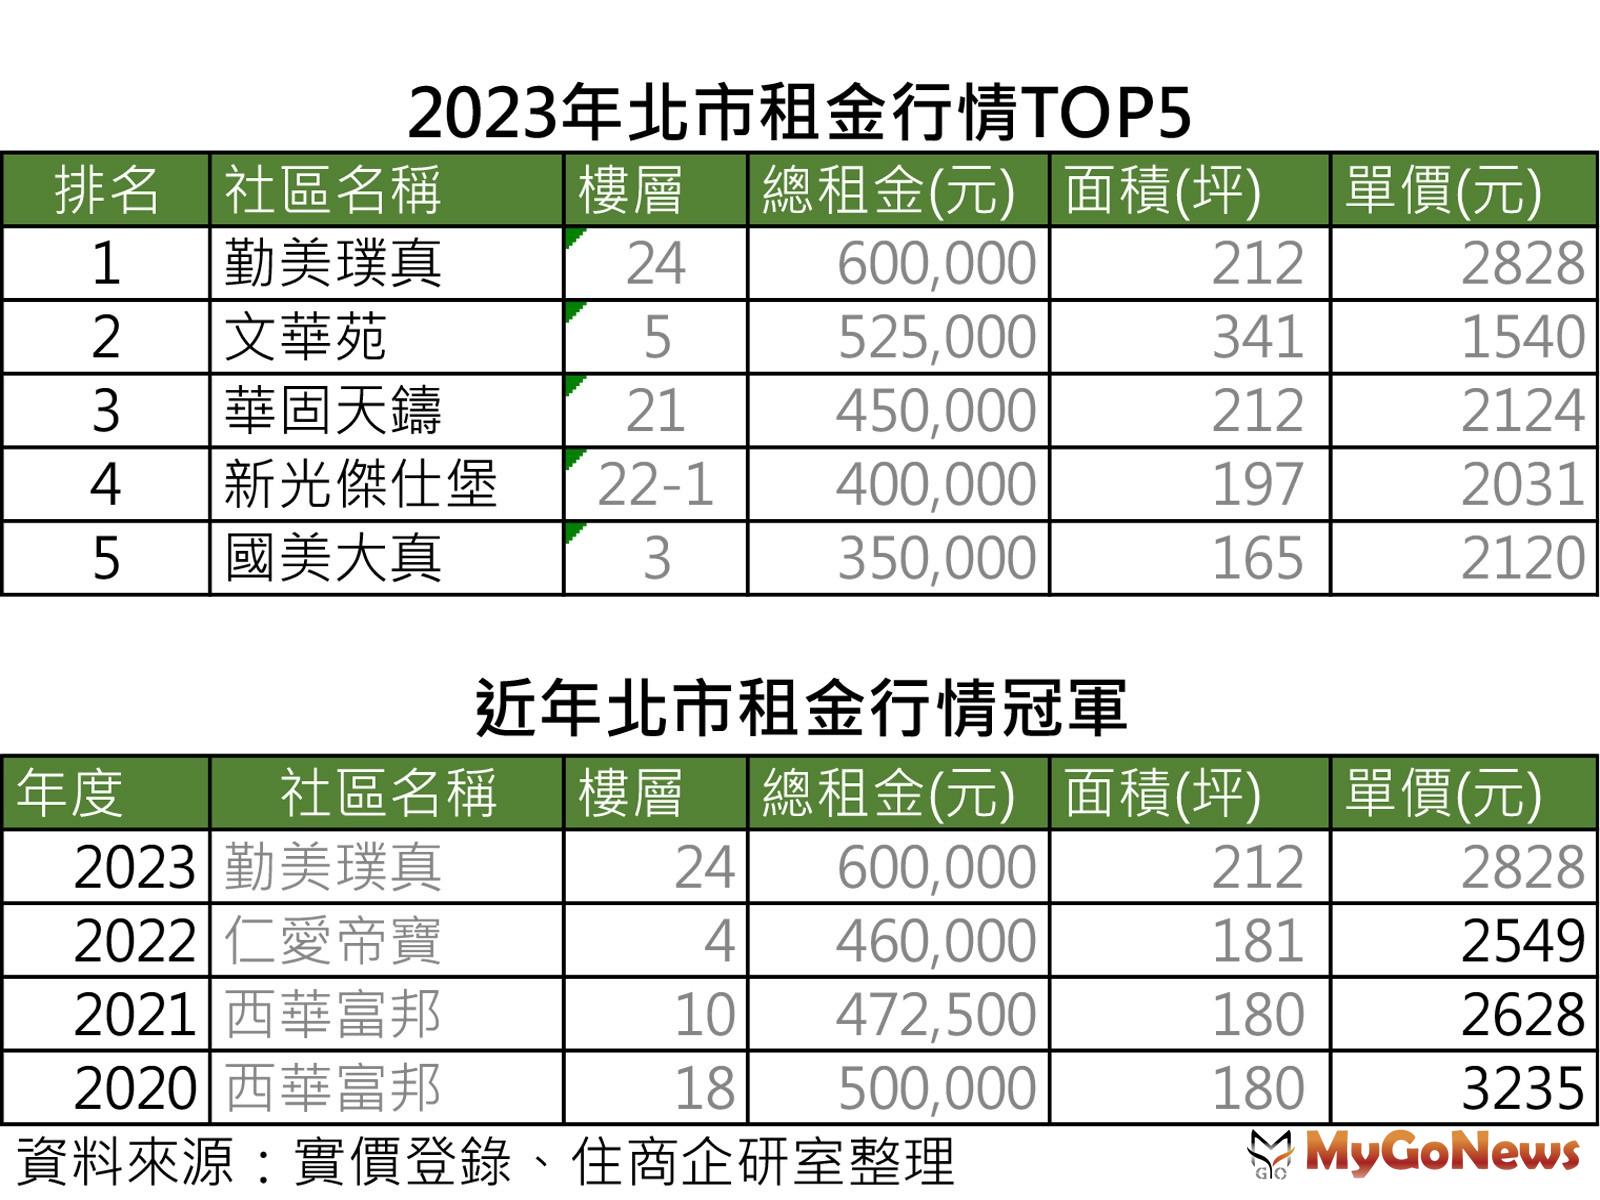 2023年北市租金行情TOP5 MyGoNews房地產新聞 市場快訊